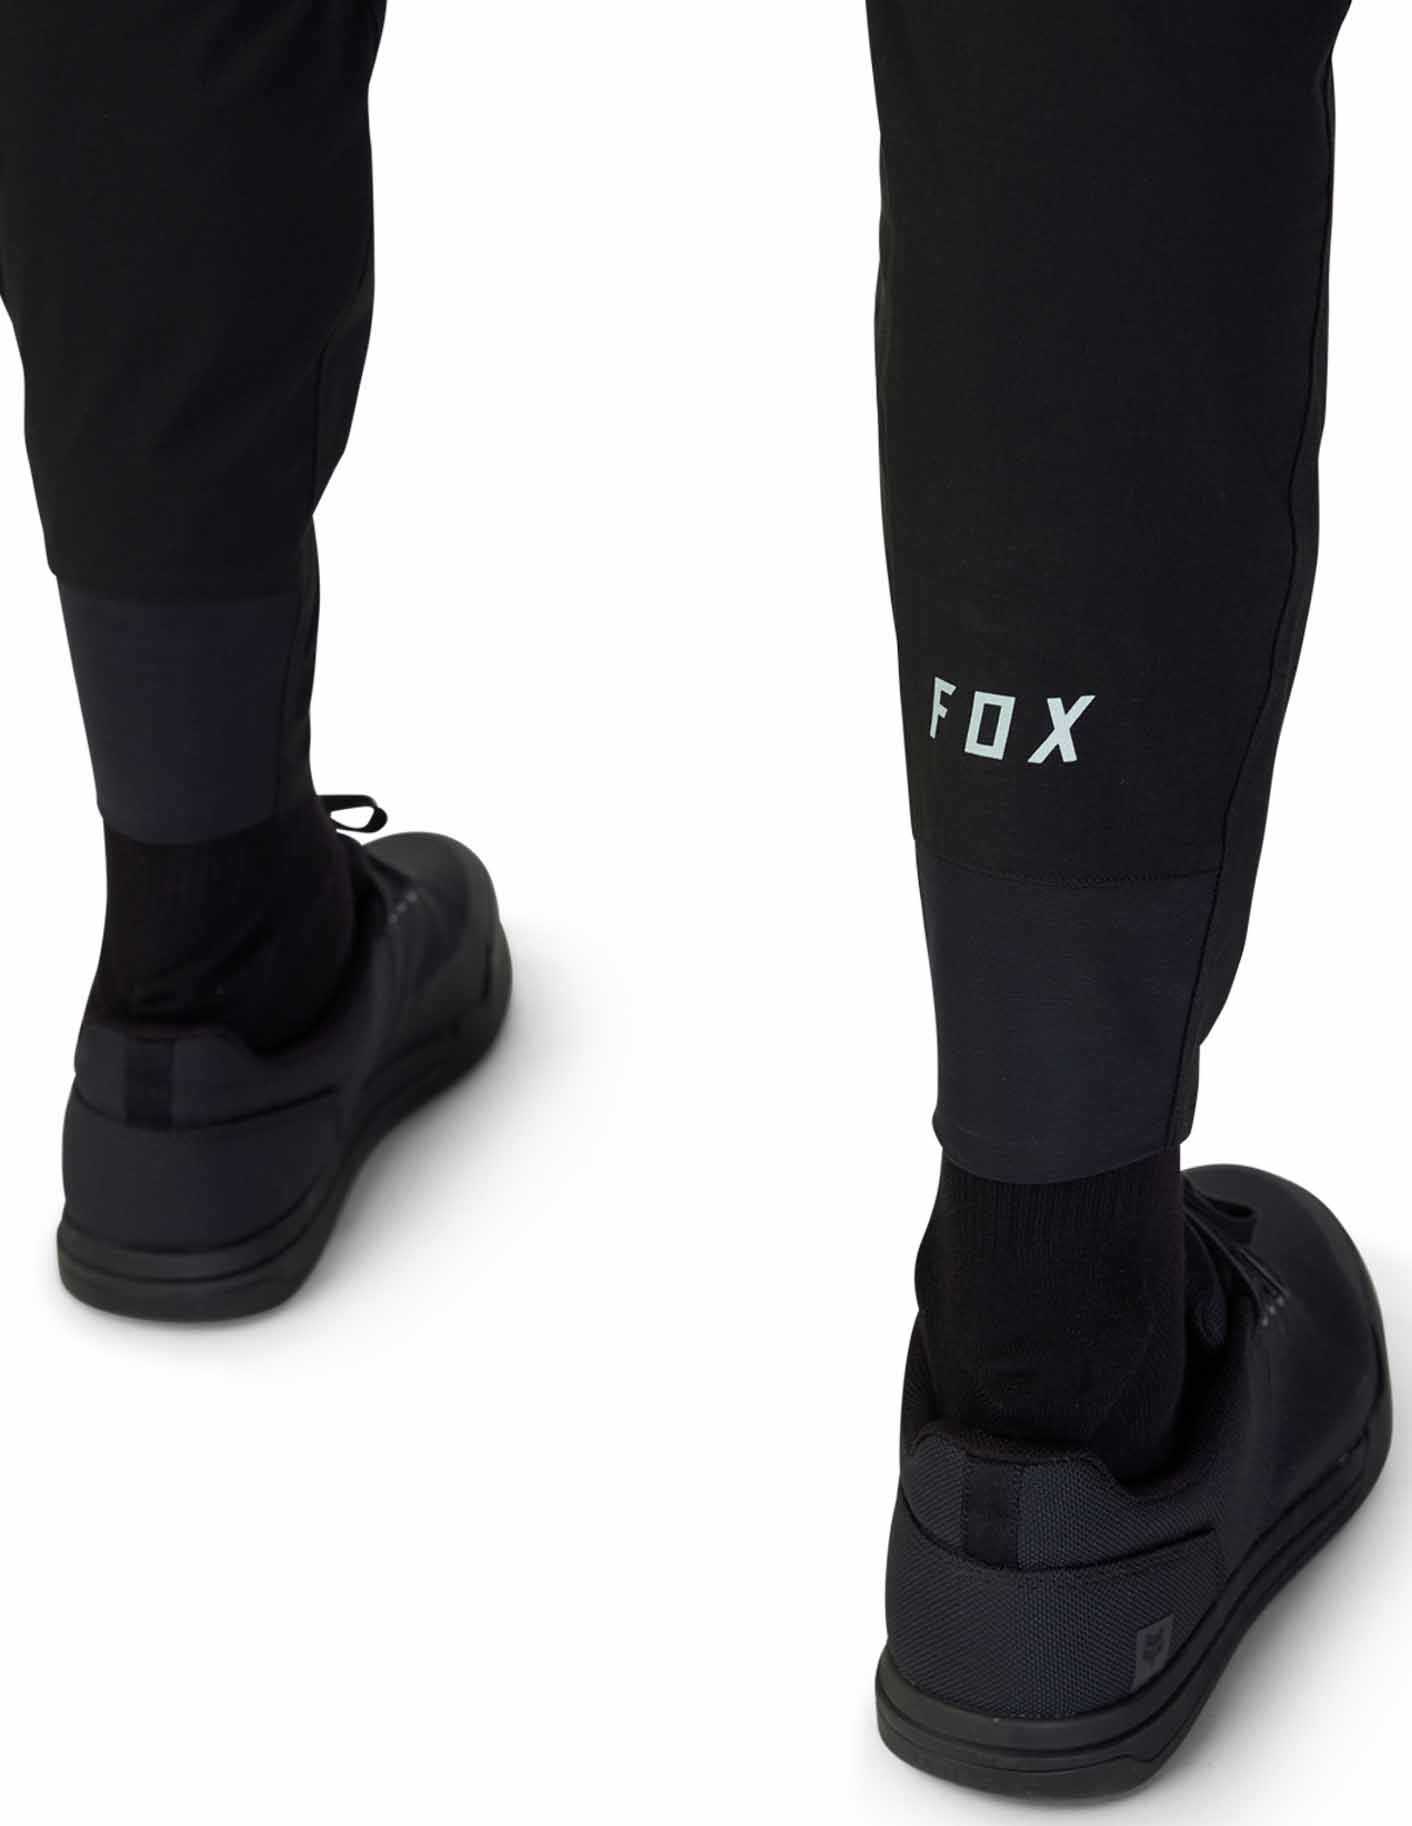 Pánske cyklistické nohavice Fox RANGER so zúženými nohavicami z odolnej elastickej tkaniny v elastickom 4- cestnom prevedení.